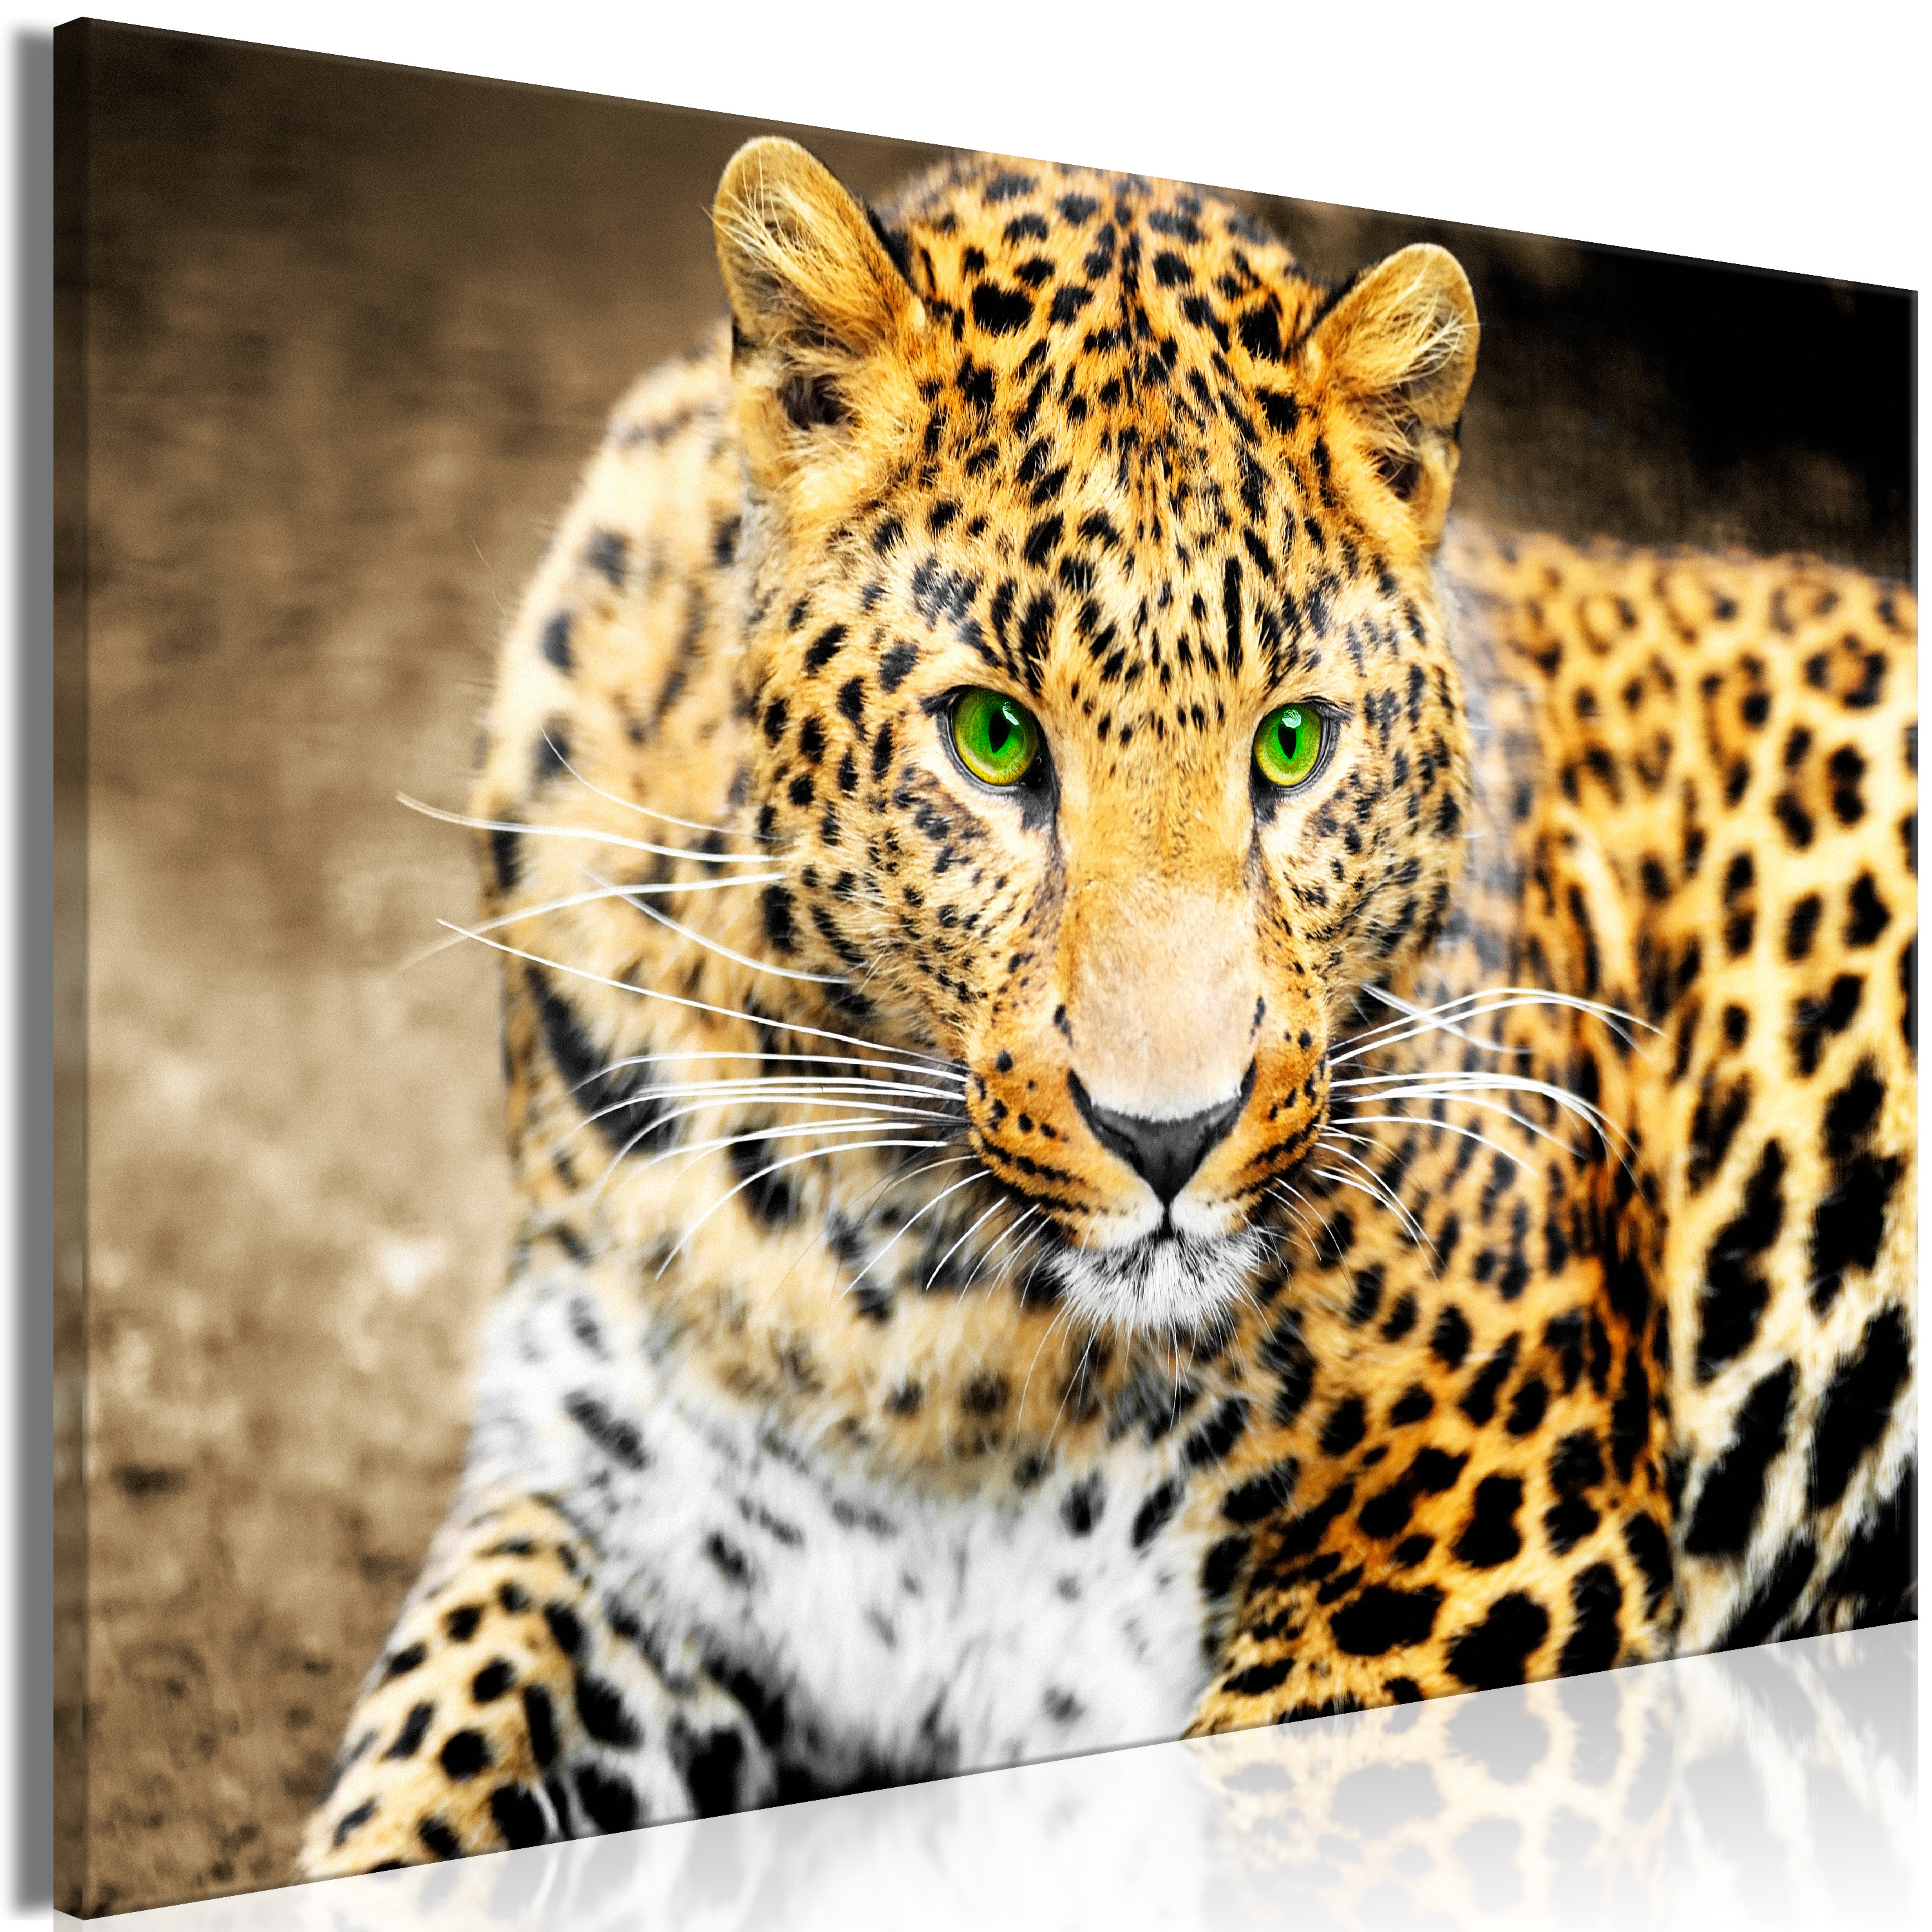 Leopardenmuster • wandsticker Leopard, Geparden, texturierte